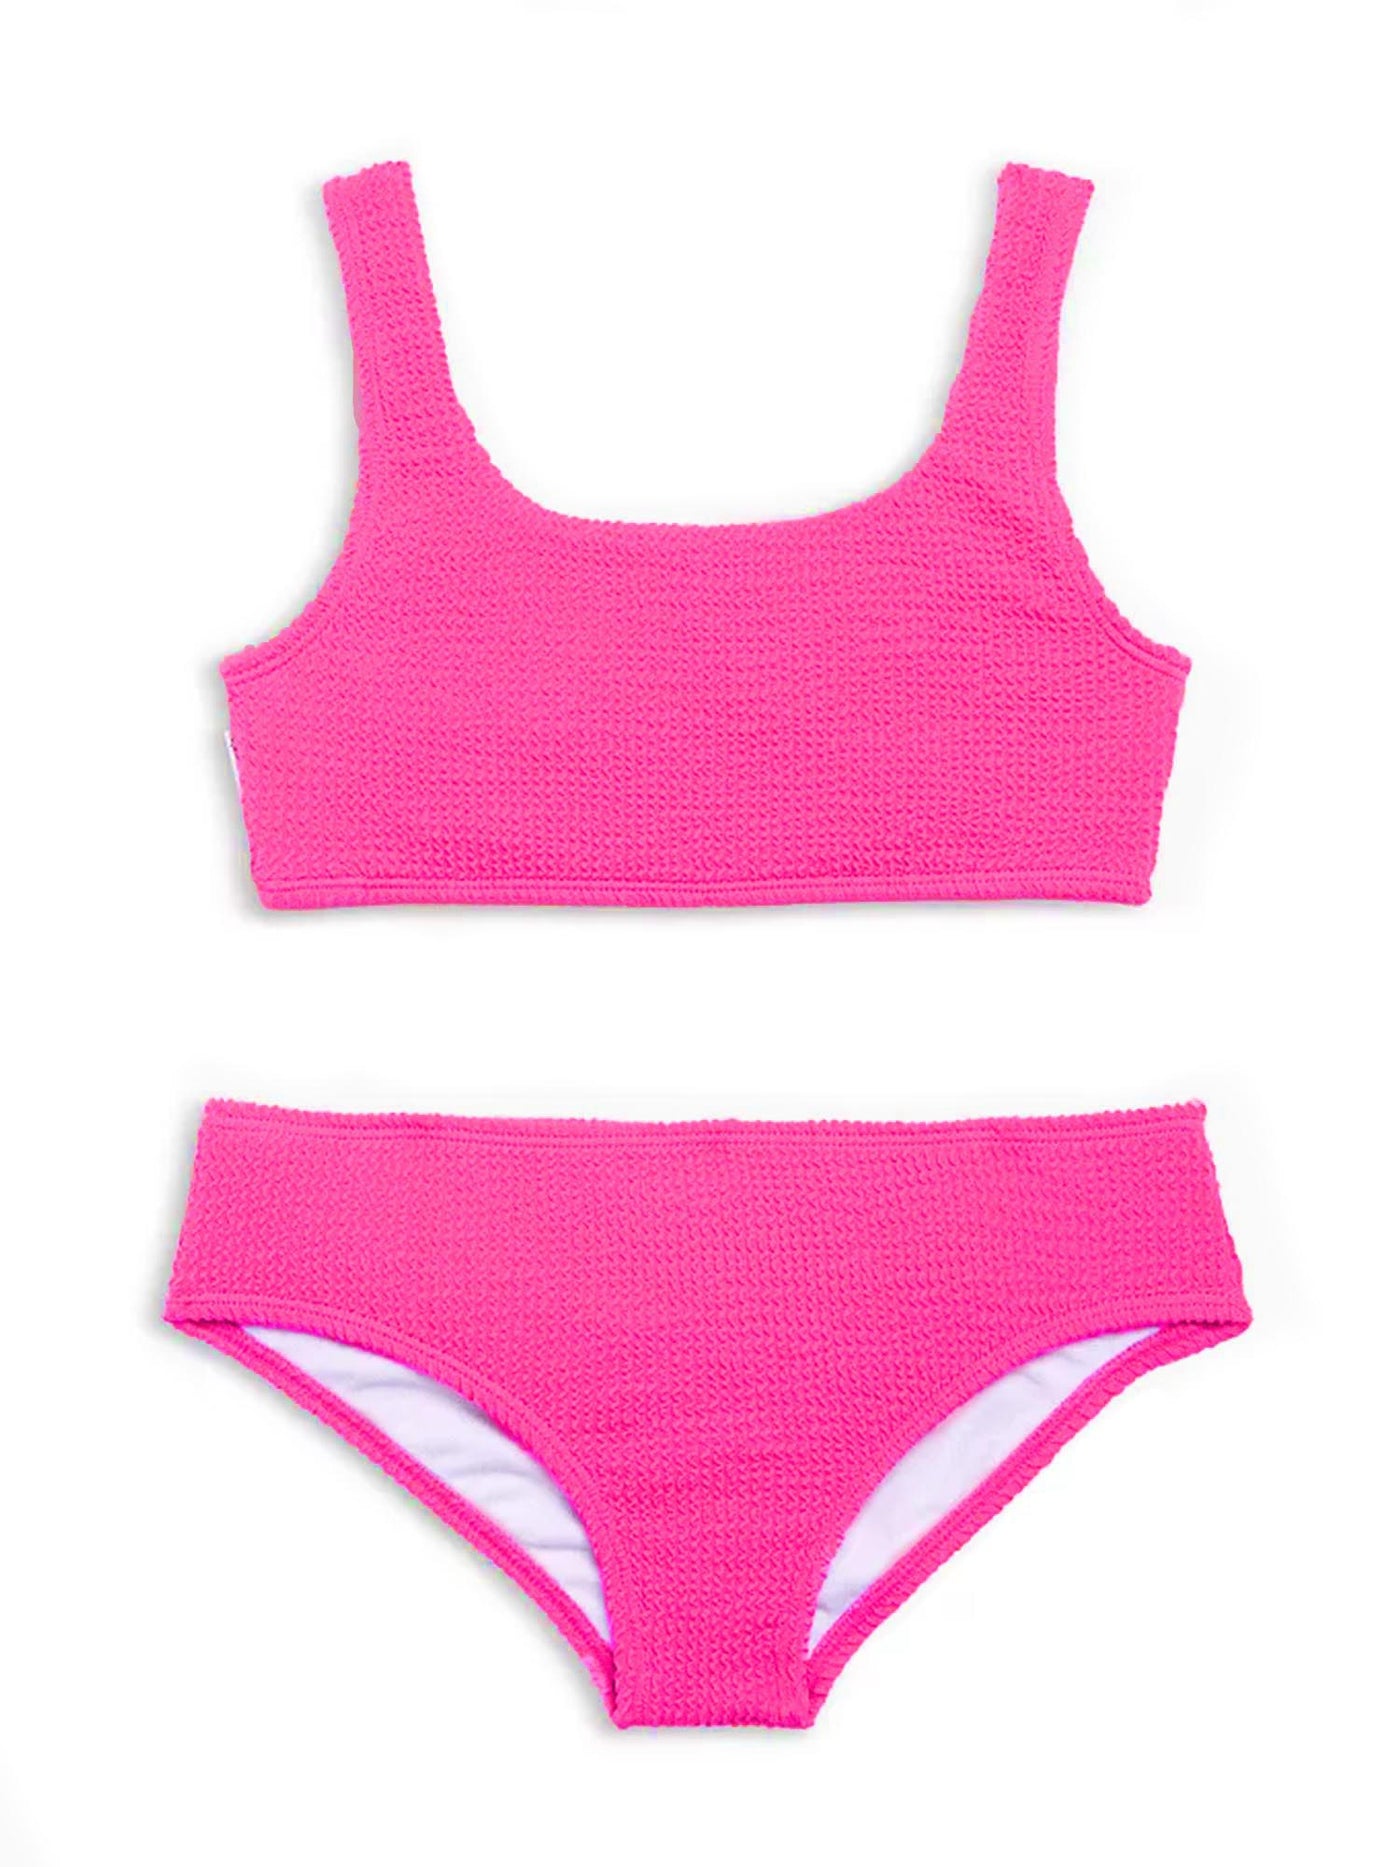 Versatile Printed Bikini Top – Xandra Swimwear